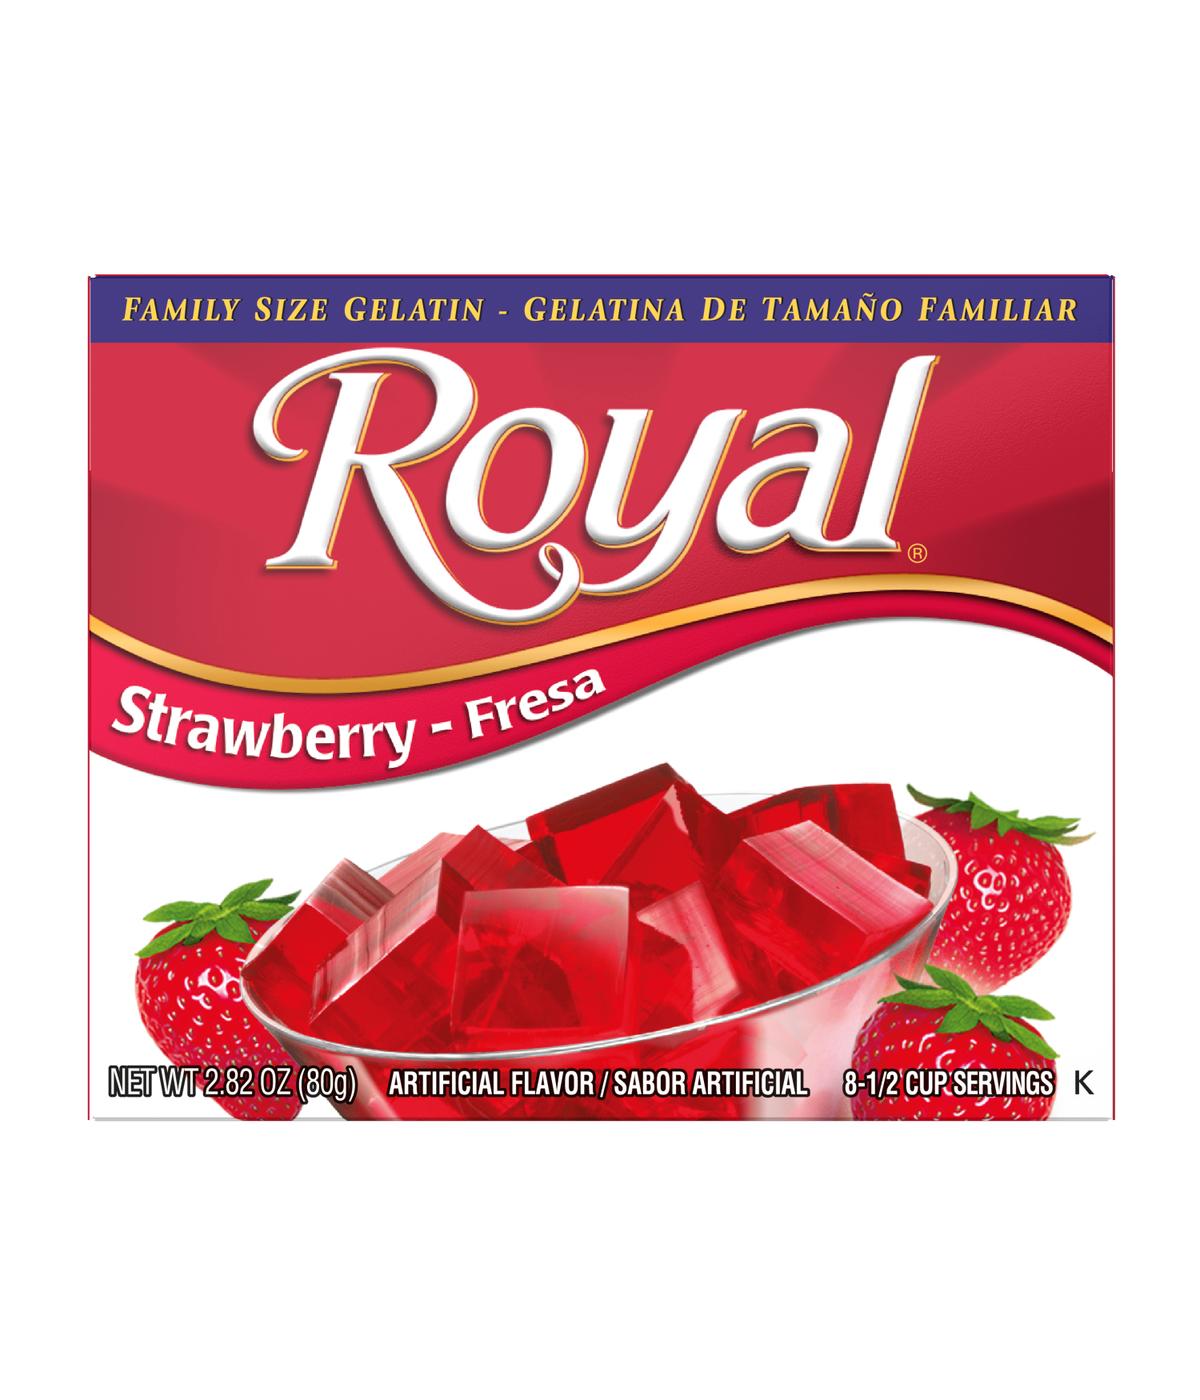 Royal Gelatin - Family Size Strawberry; image 1 of 2